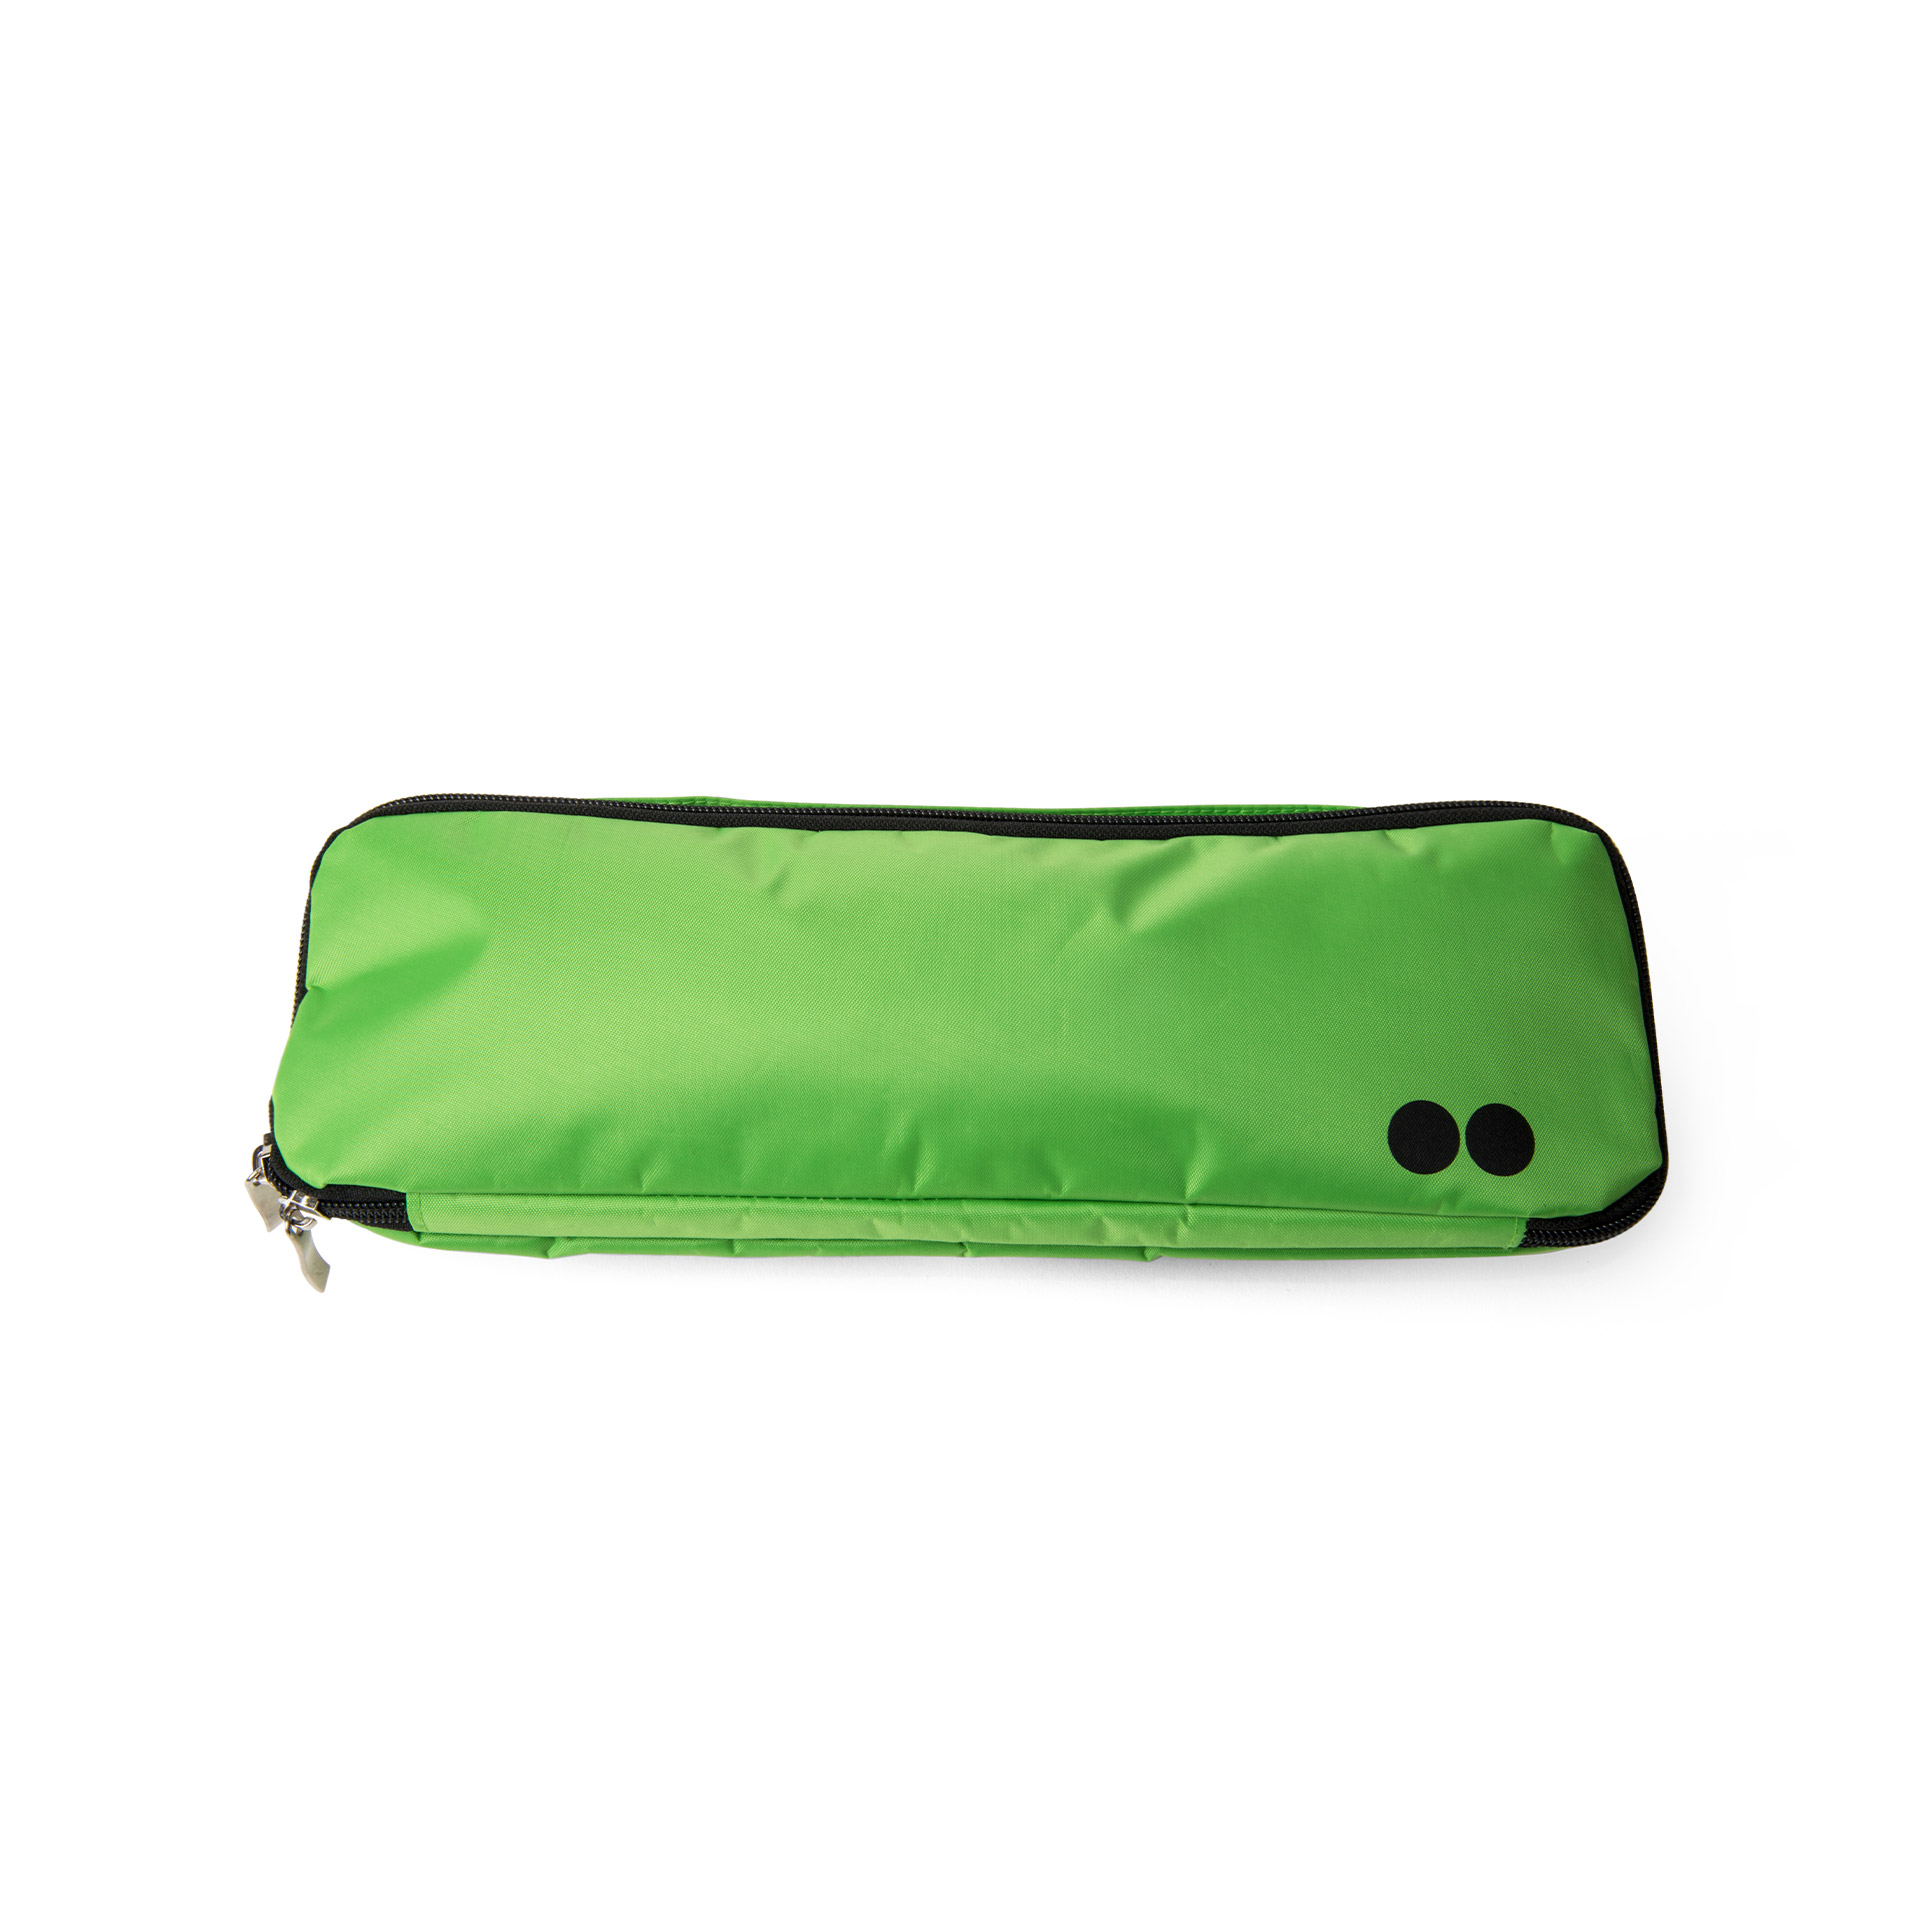 Borsetta porta ombrello assorbi acqua - Colore verde, verde, large